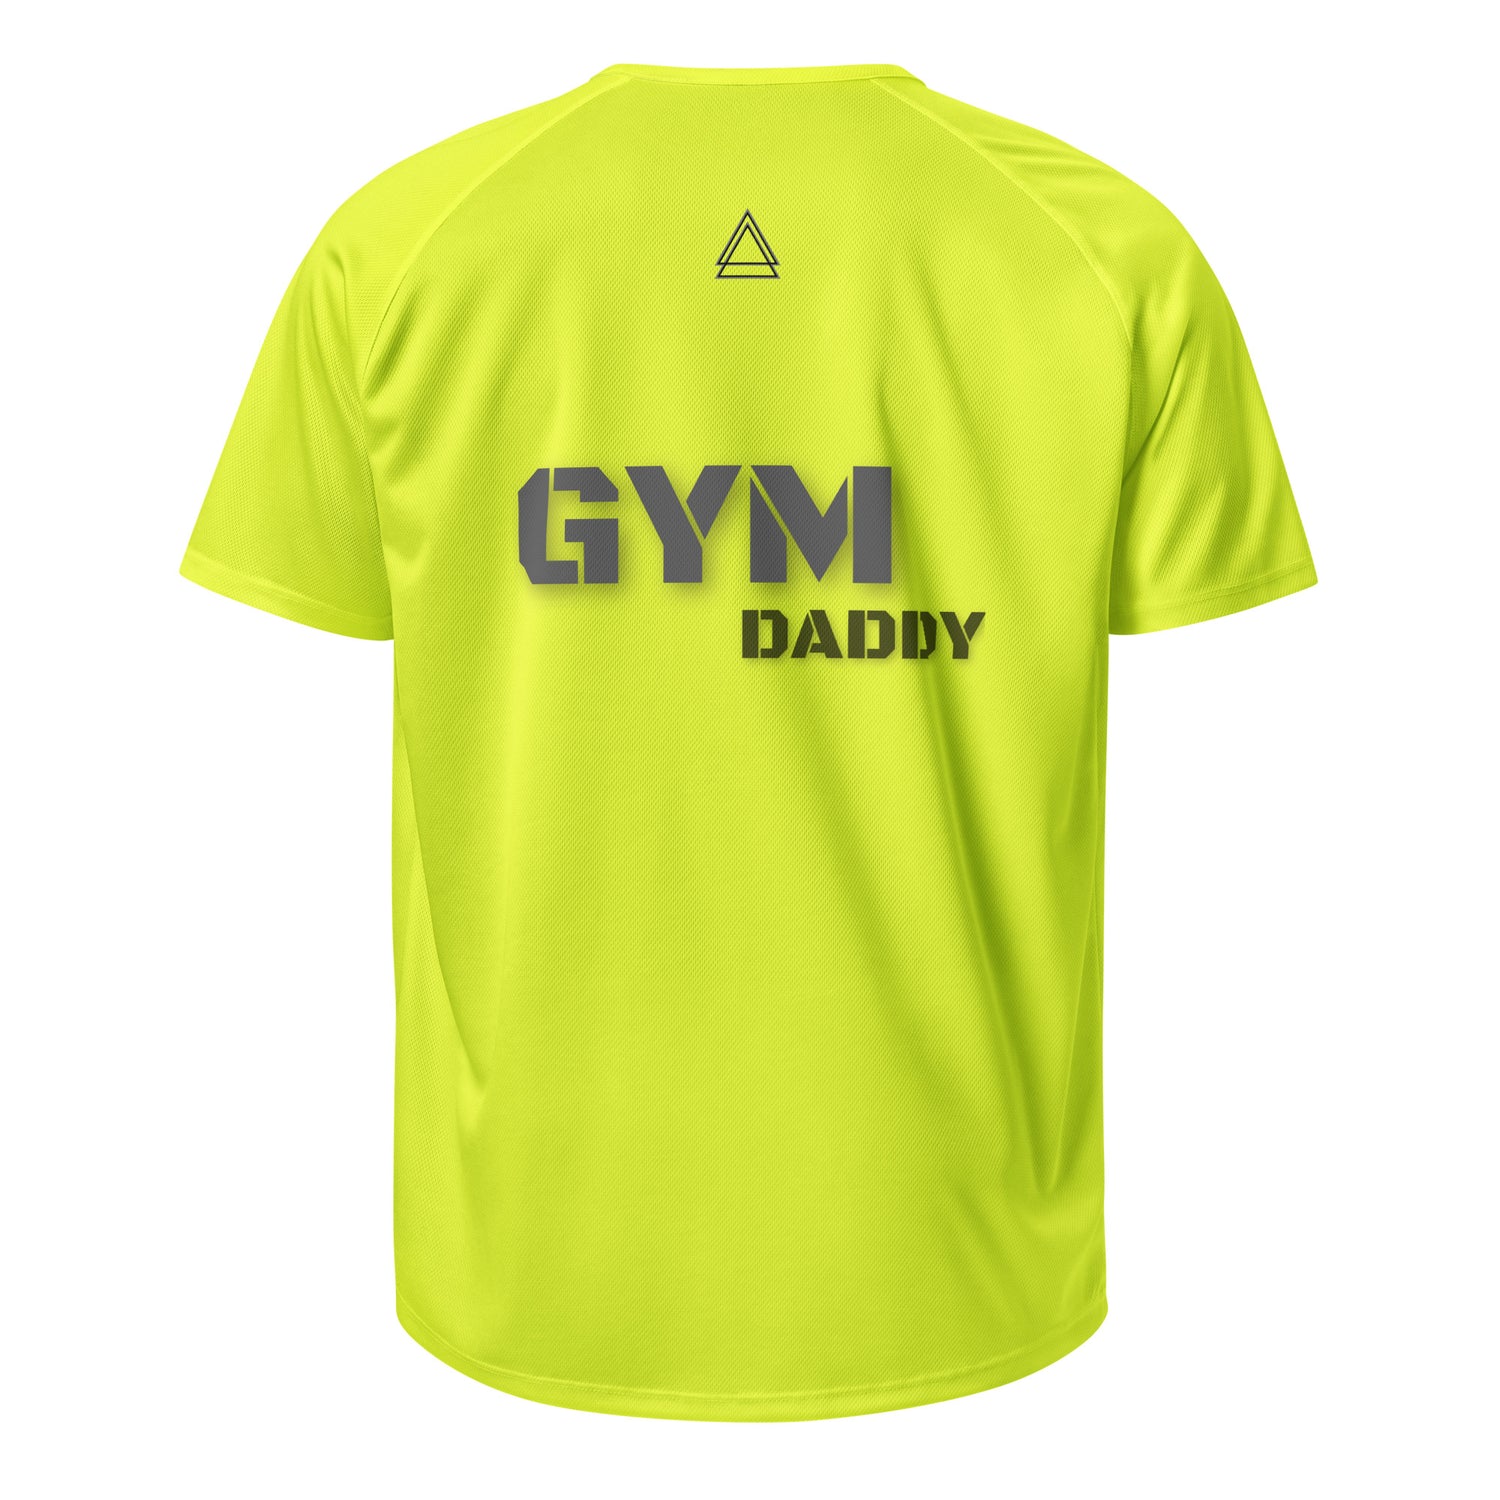 Unisex Gym T-Shirts